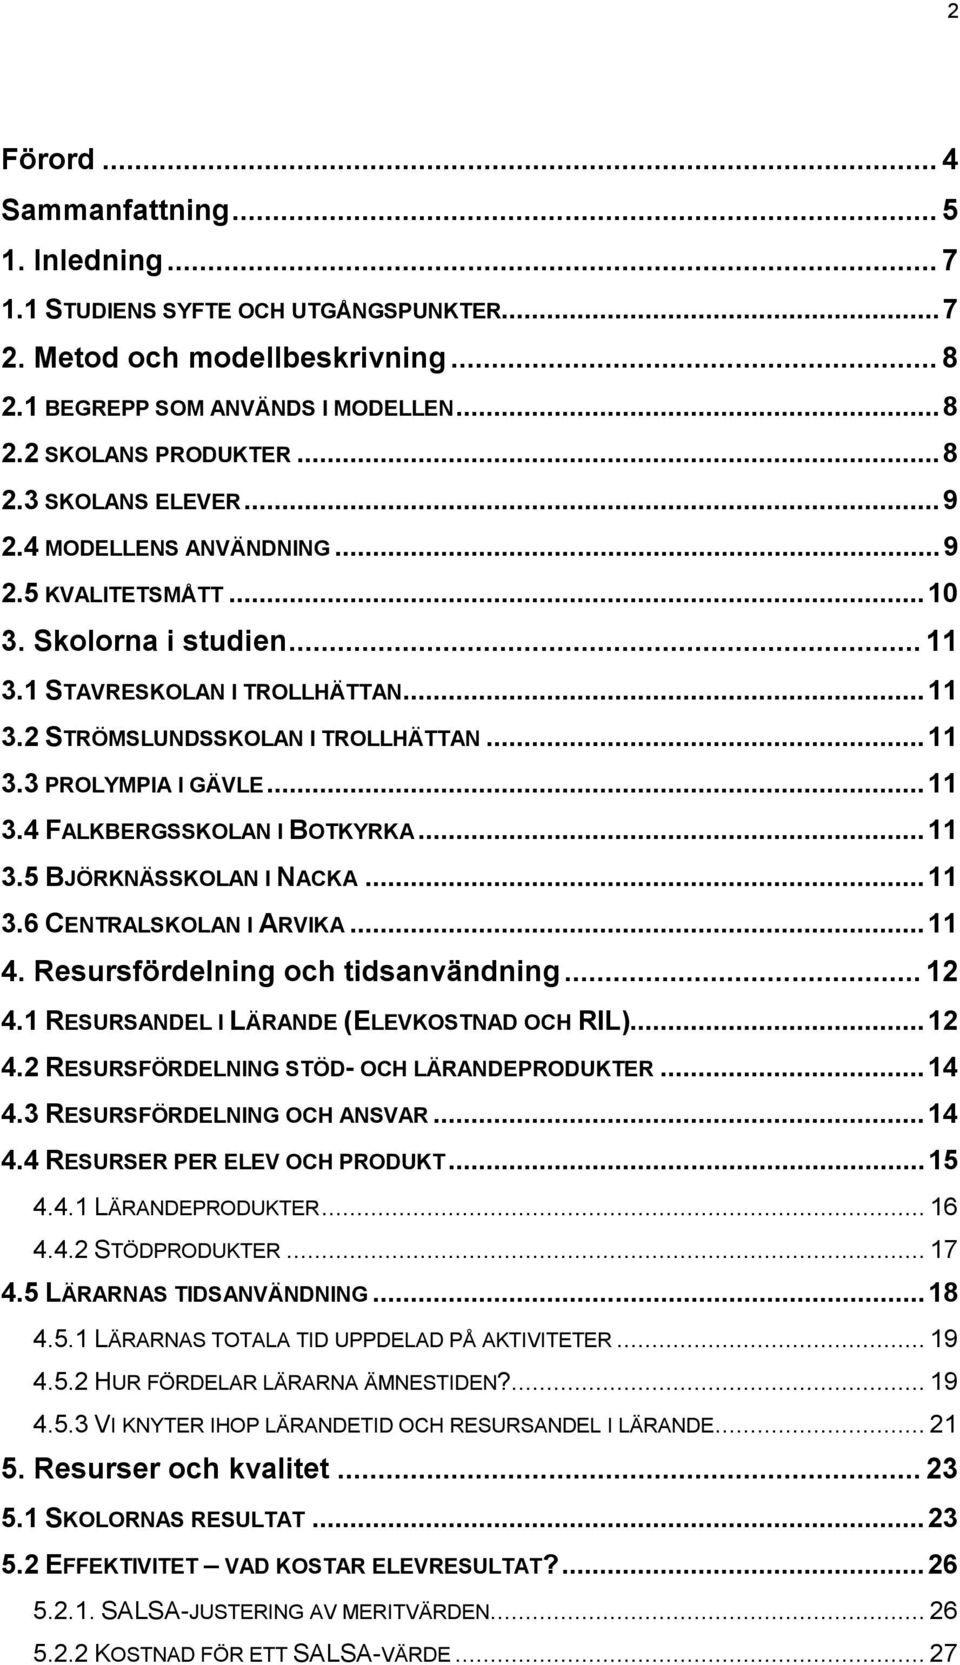 ..11 3.5 BJÖRKNÄSSKOLAN I NACKA...11 3.6 CENTRALSKOLAN I ARVIKA...11 4. Resursfördelning och tidsanvändning...12 4.1 RESURSANDEL I LÄRANDE (ELEVKOSTNAD OCH RIL)...12 4.2 RESURSFÖRDELNING STÖD- OCH LÄRANDEPRODUKTER.